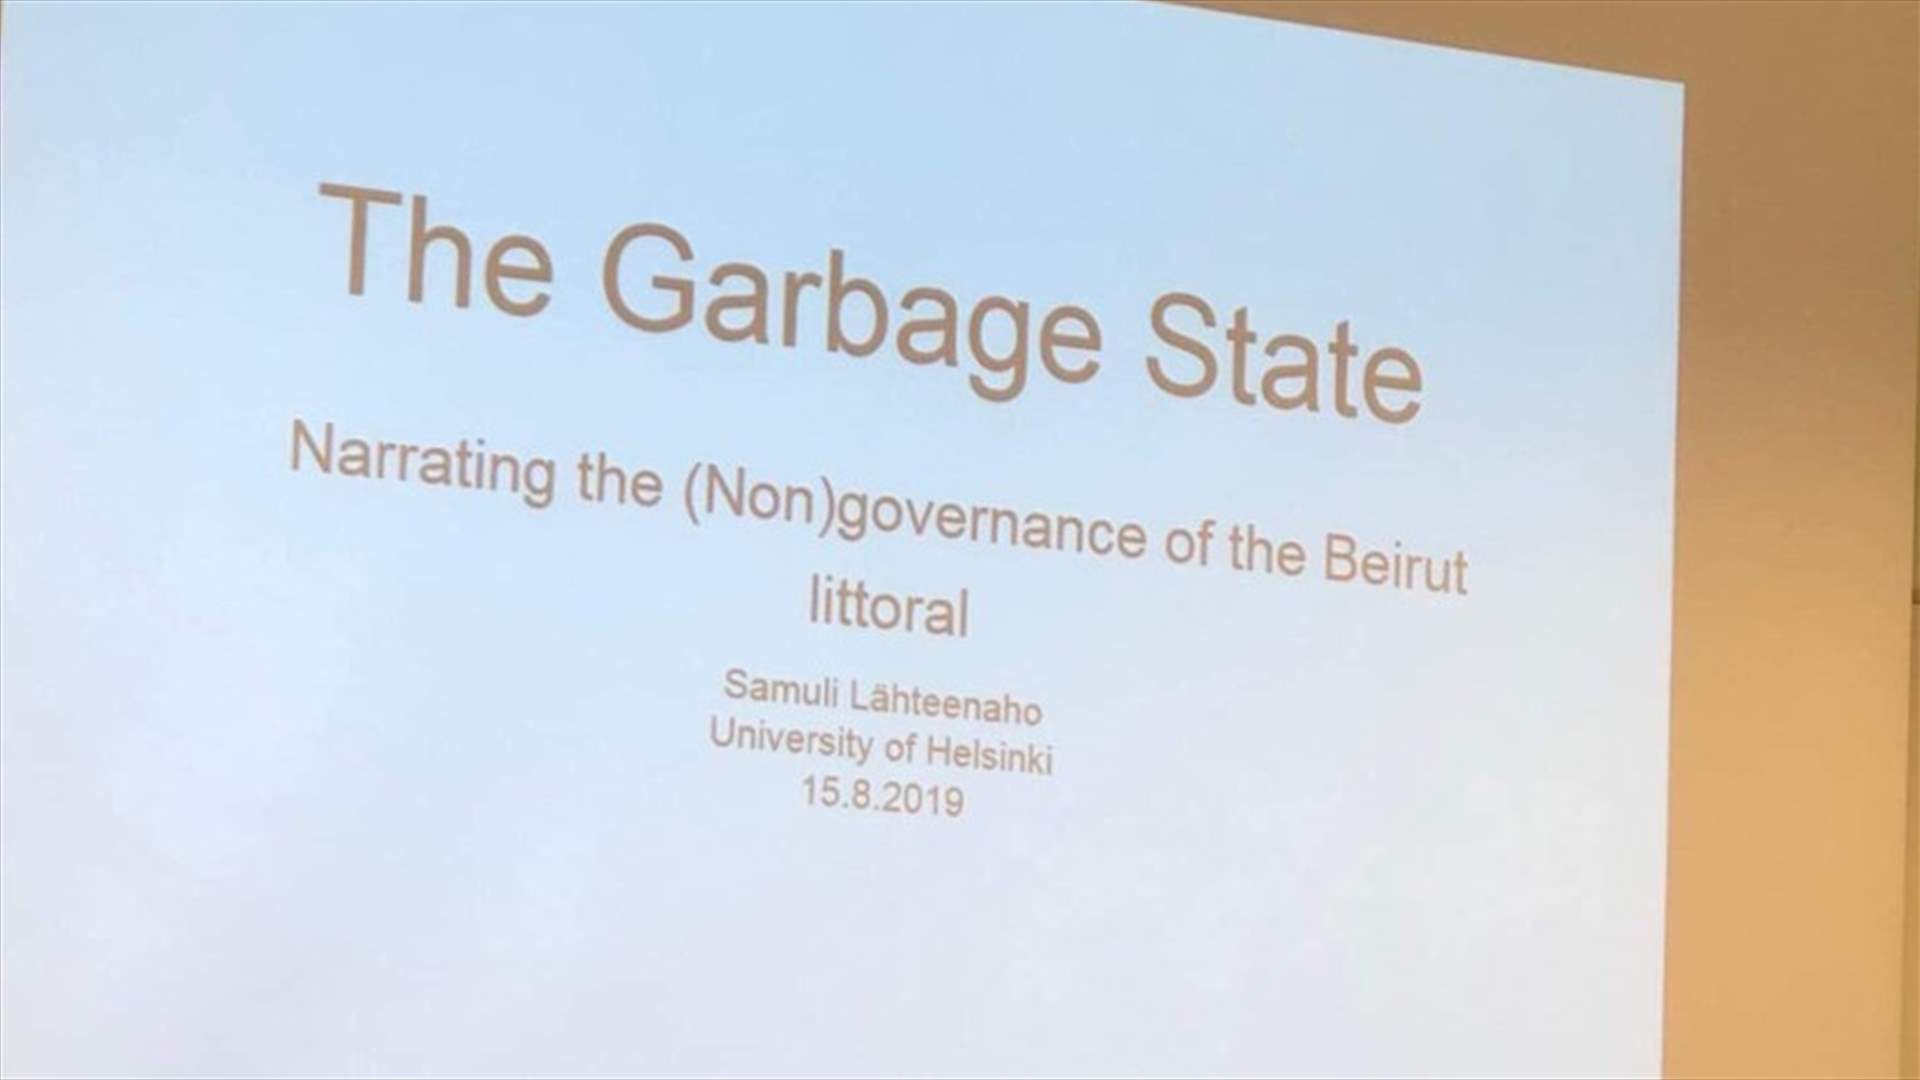 بعدما أشعل لبنان في الأيام الماضية... صاحب ورقة البحث The Garbage State يوضح (الأخبار)